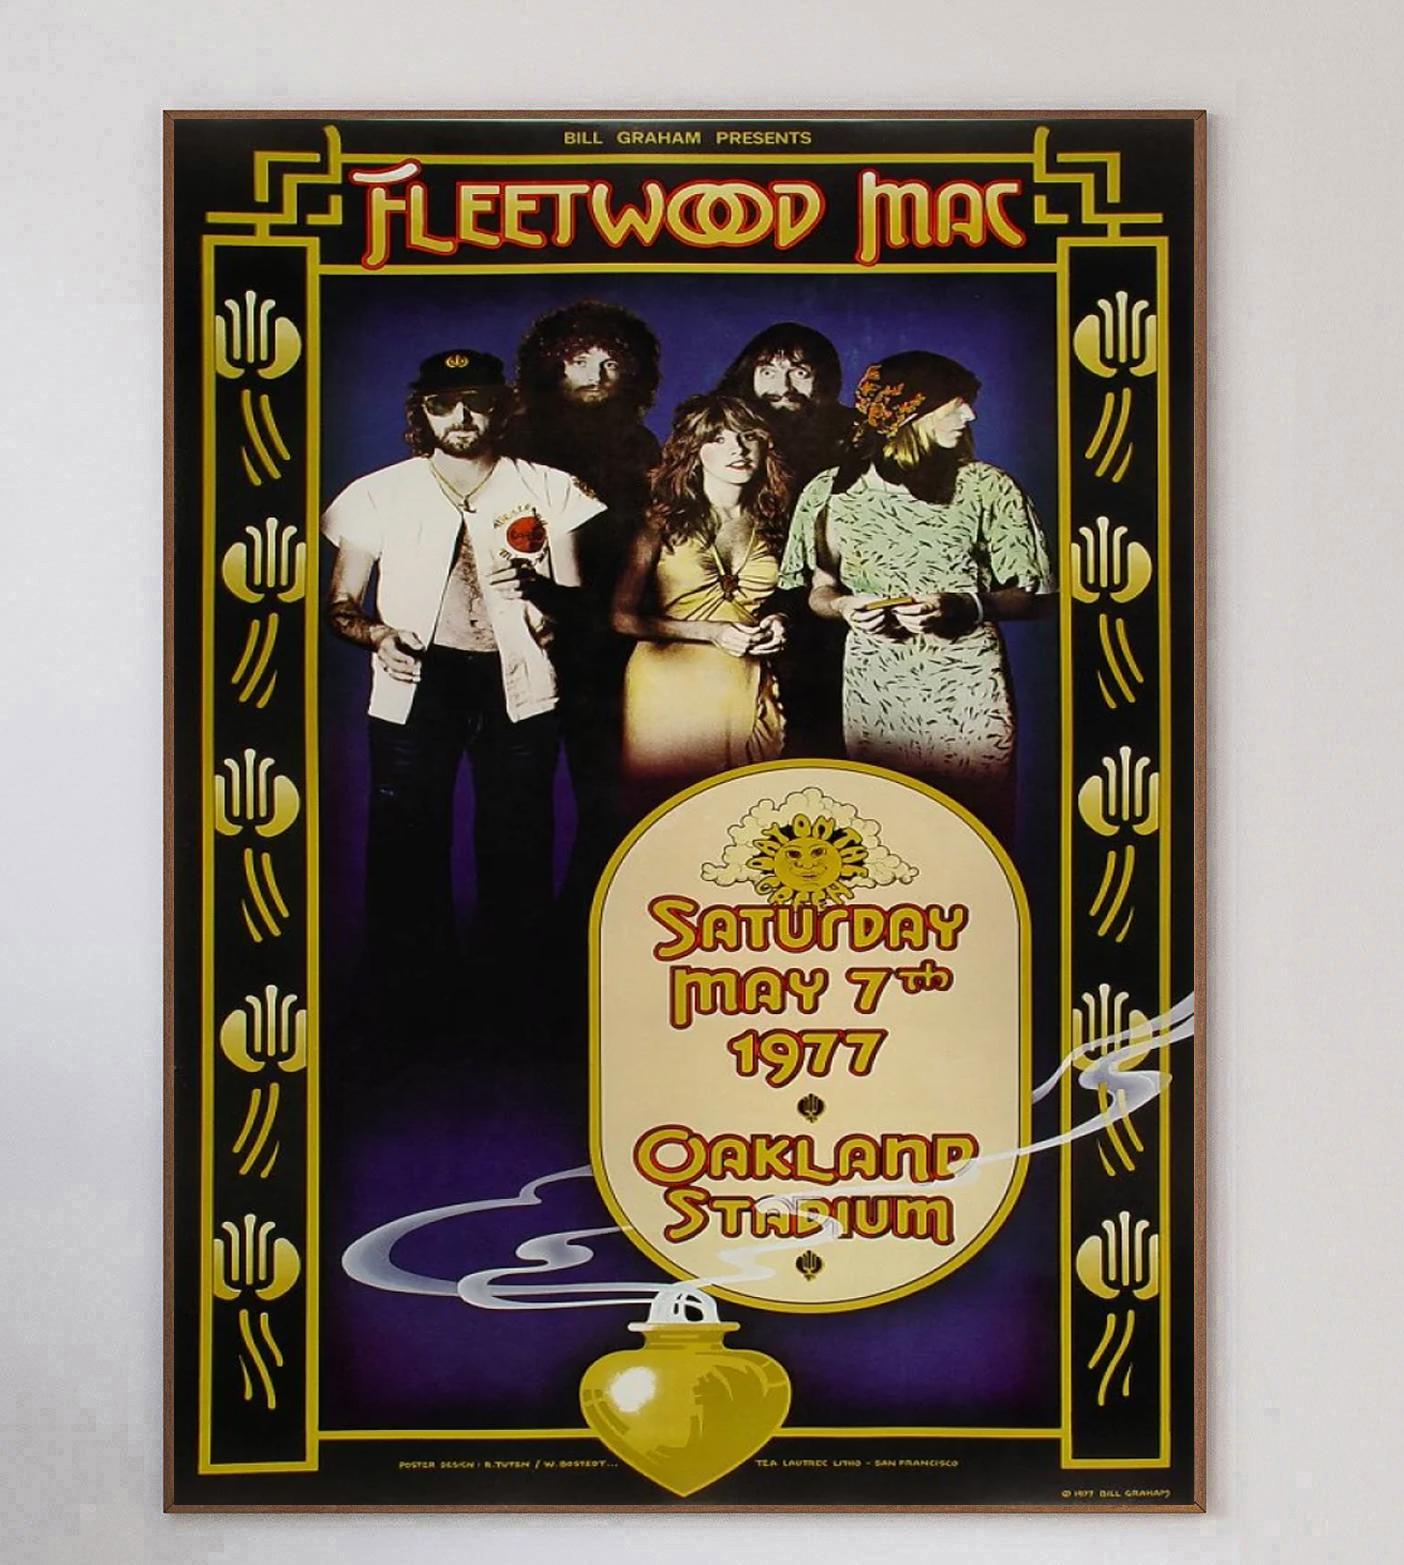 Conçue par Randy Tuten et William Bodstedt, artistes spécialisés dans les affiches de concert, cette magnifique affiche a été créée en 1977 pour promouvoir un concert de Fleetwood Mac au célèbre Oakland Coliseum en Californie. Les événements